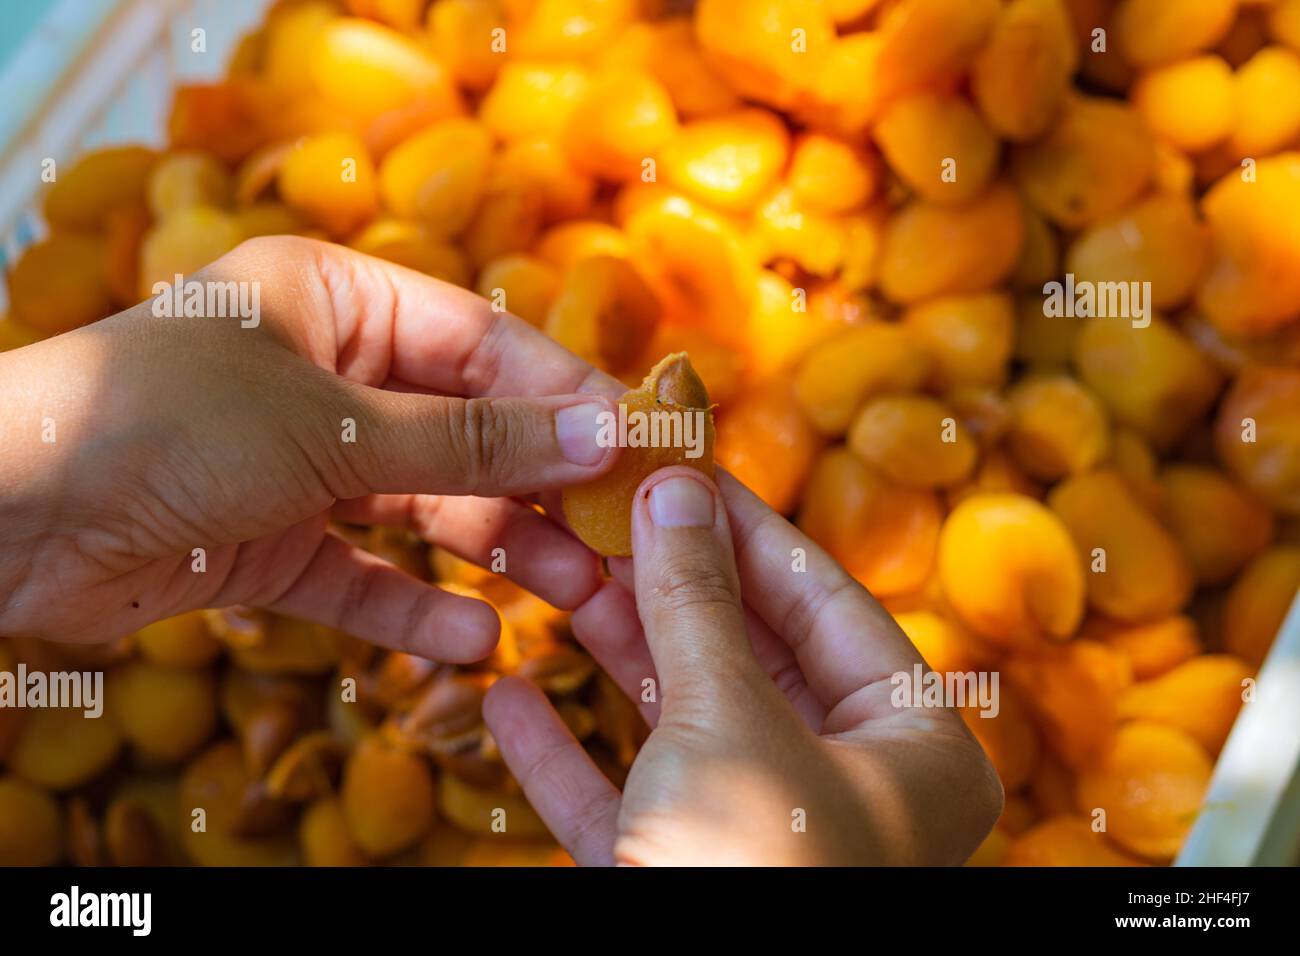 Herstellung von getrockneten Aprikosen. Frau extrahiert den Samen zum Trocknen der Aprikose. Stockfoto